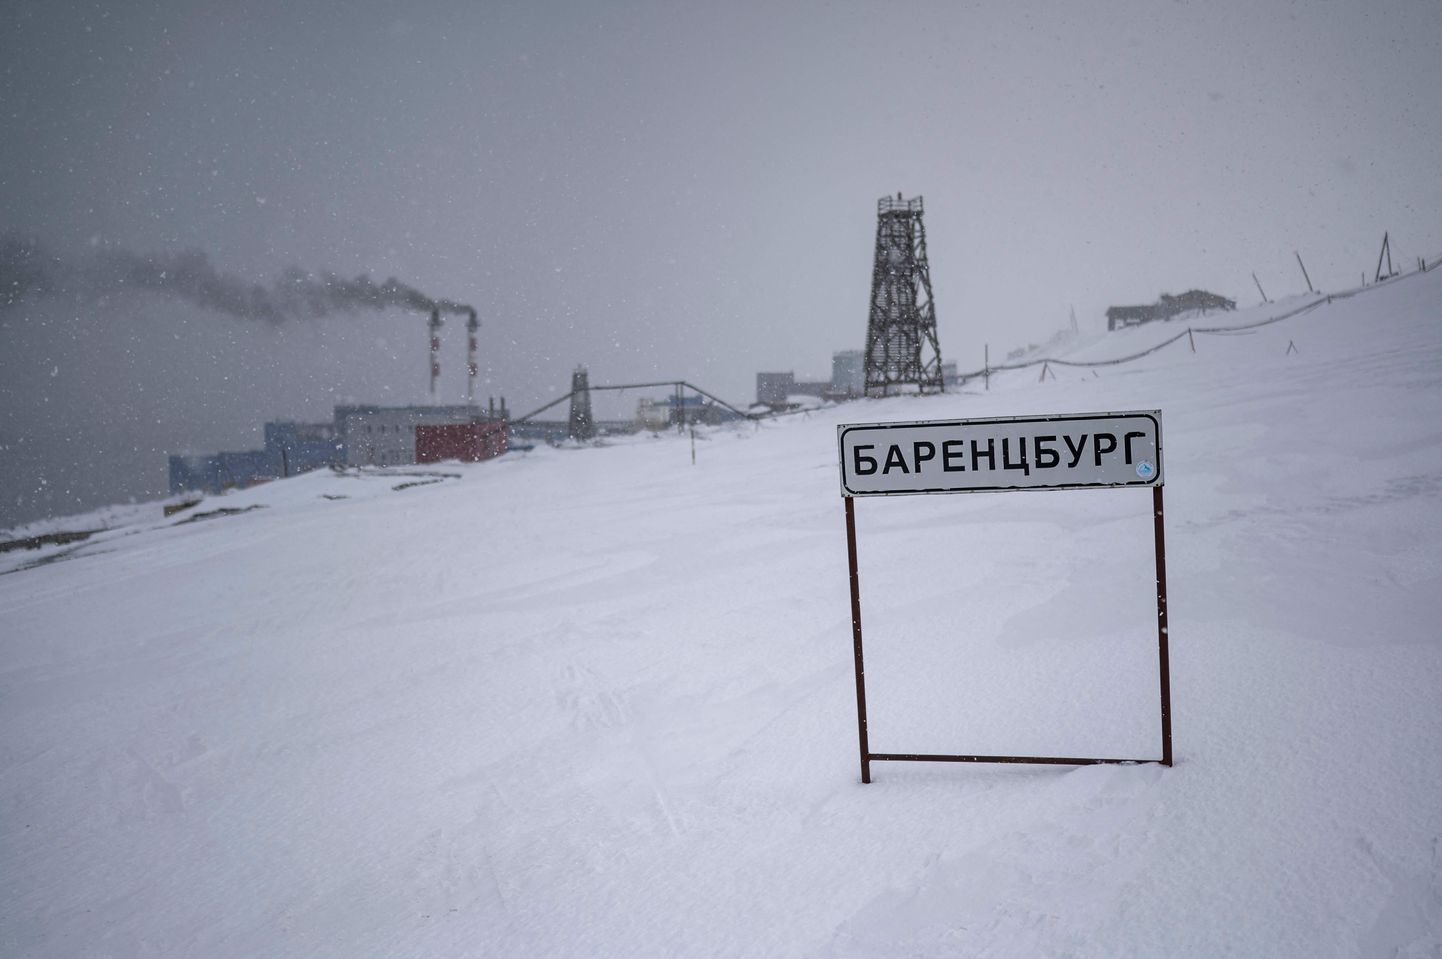 Vene kaevanduslinna Barentsburgi silt Svalbardi saarestikus.